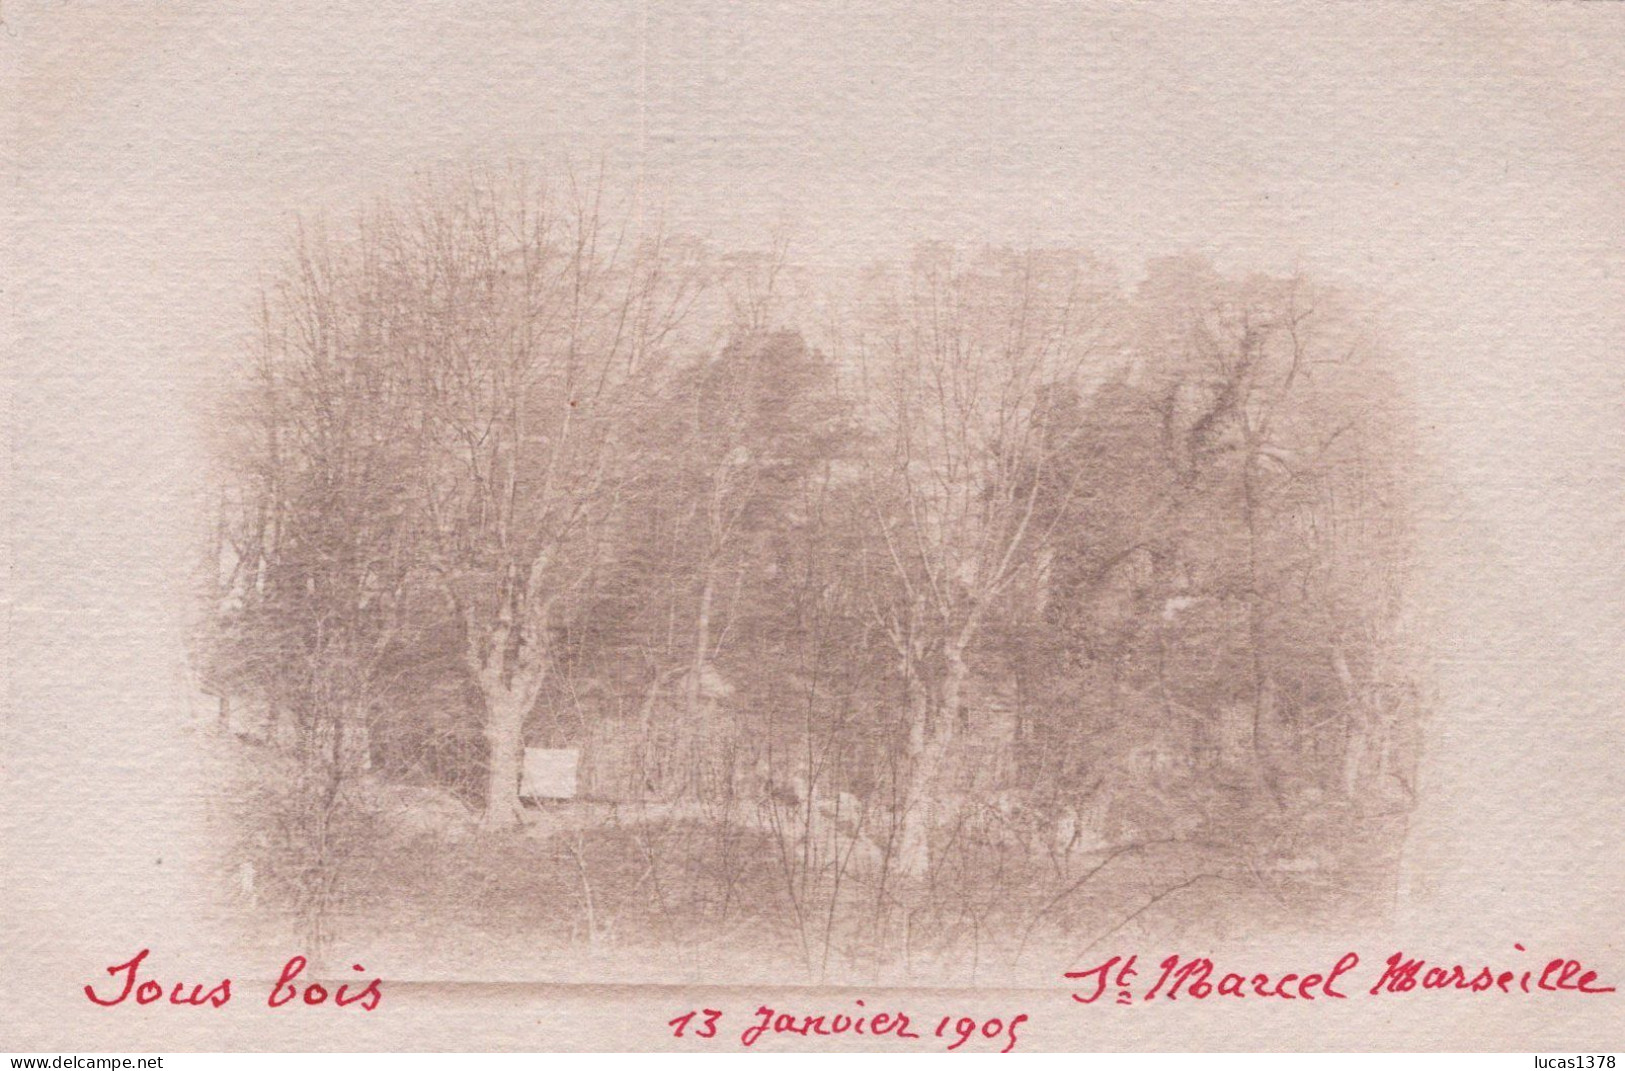 13 / MARSEILLE / SAINT MARCEL / CARTE PHOTO / SOUS BOIS 1905 - Saint Marcel, La Barasse, Saintt Menet